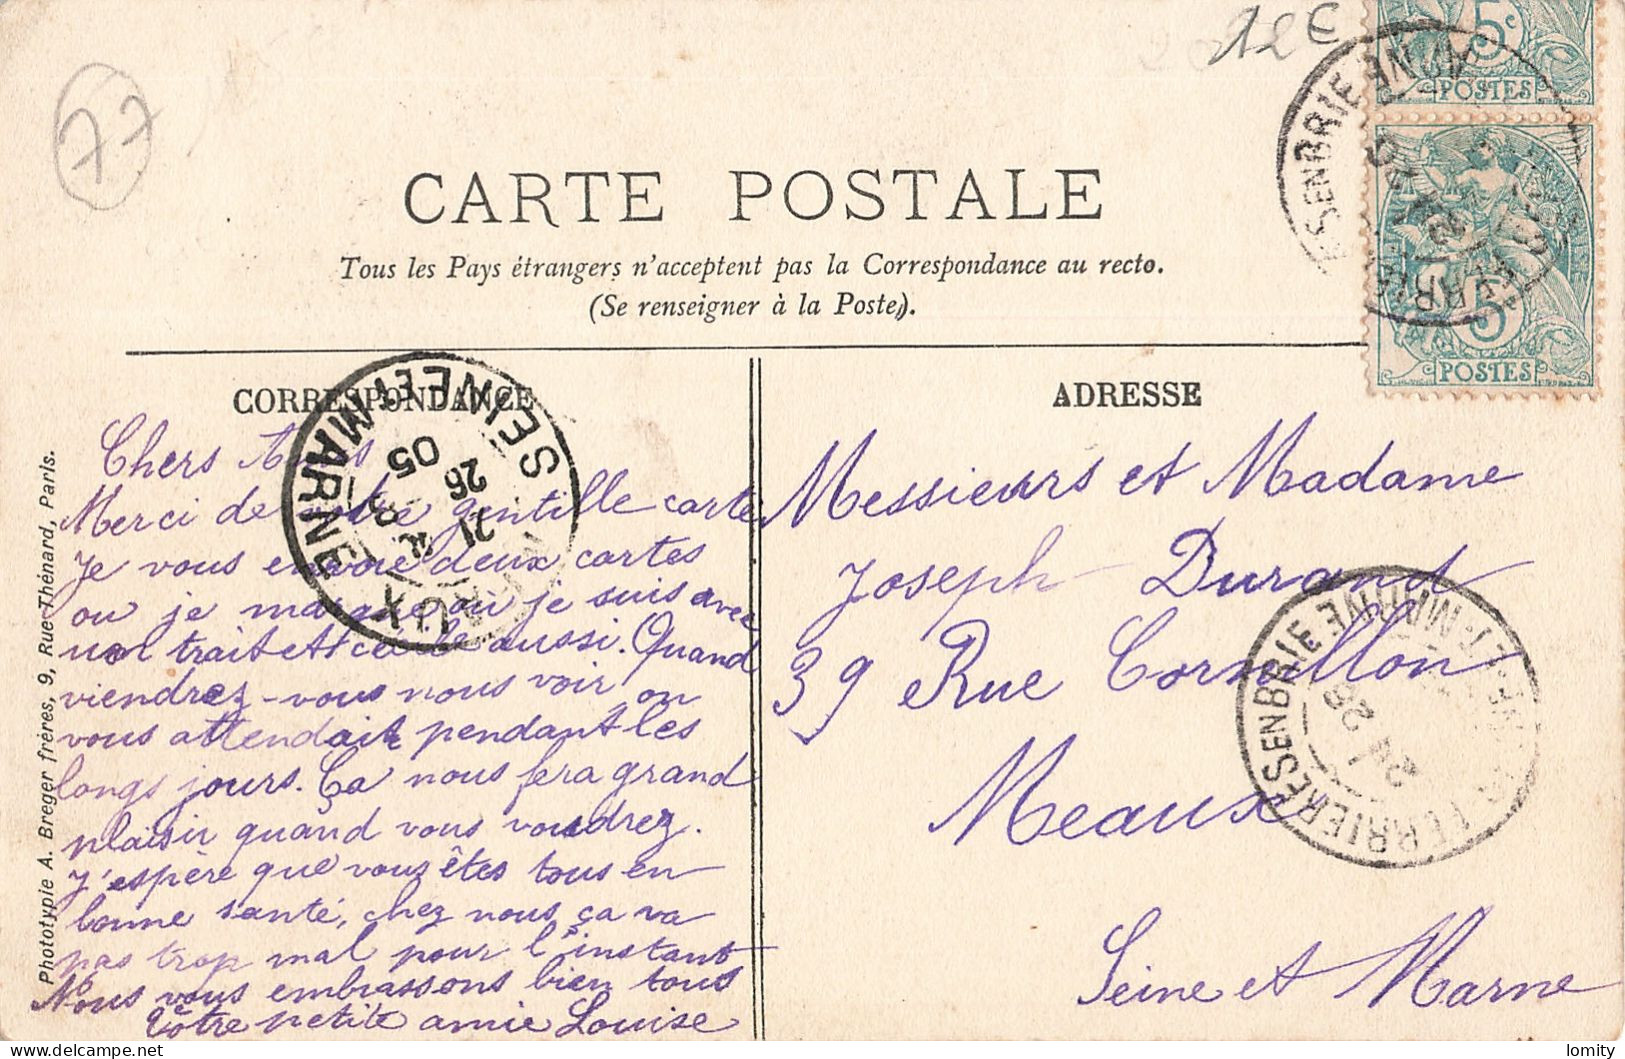 Destockage Lot De 13 Cartes Postales CPA Seine Et Marne Lagny Ferrieres En Brie Fontainebleau Dammarie Les Lys Melun - 5 - 99 Postcards